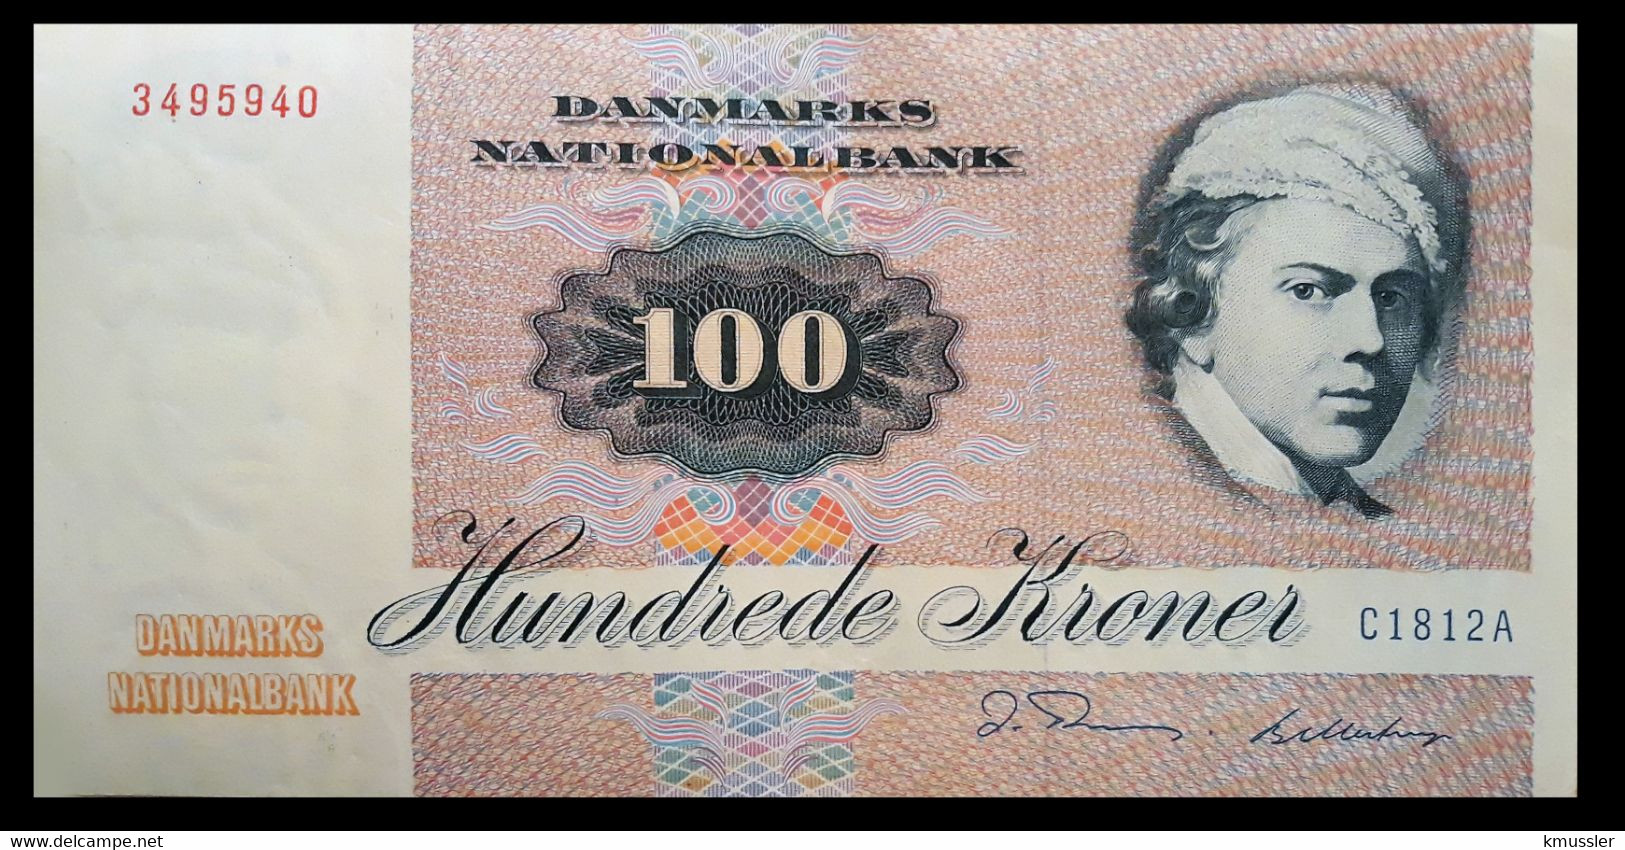 # # # Banknote Dänemark (Denmark) 100 Kroner 1981 # # # - Danemark